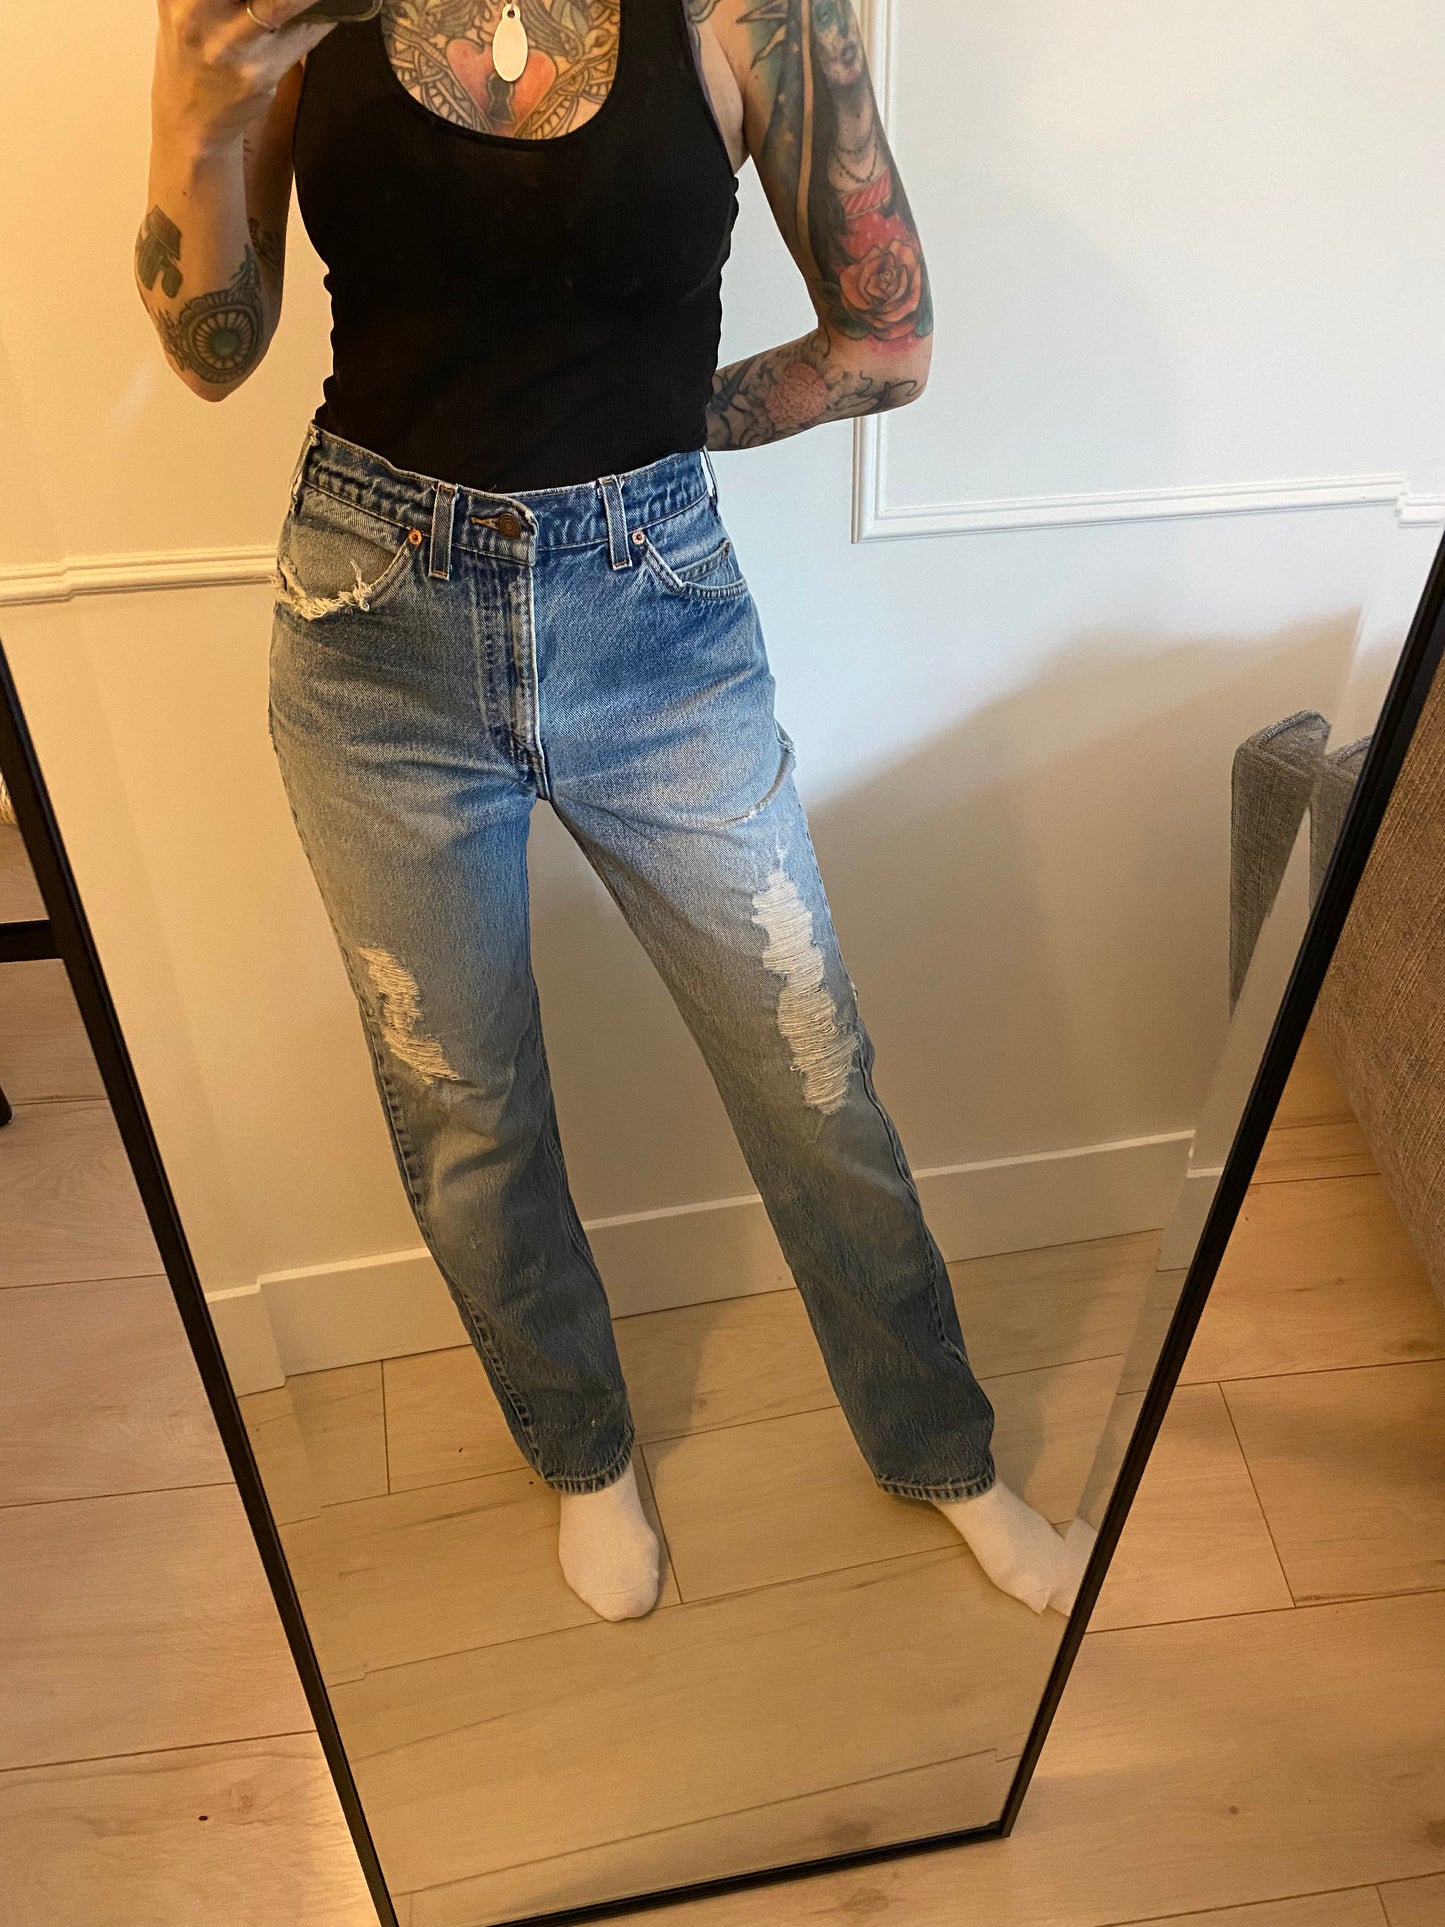 Size 28/29 Levi’s 505 jeans